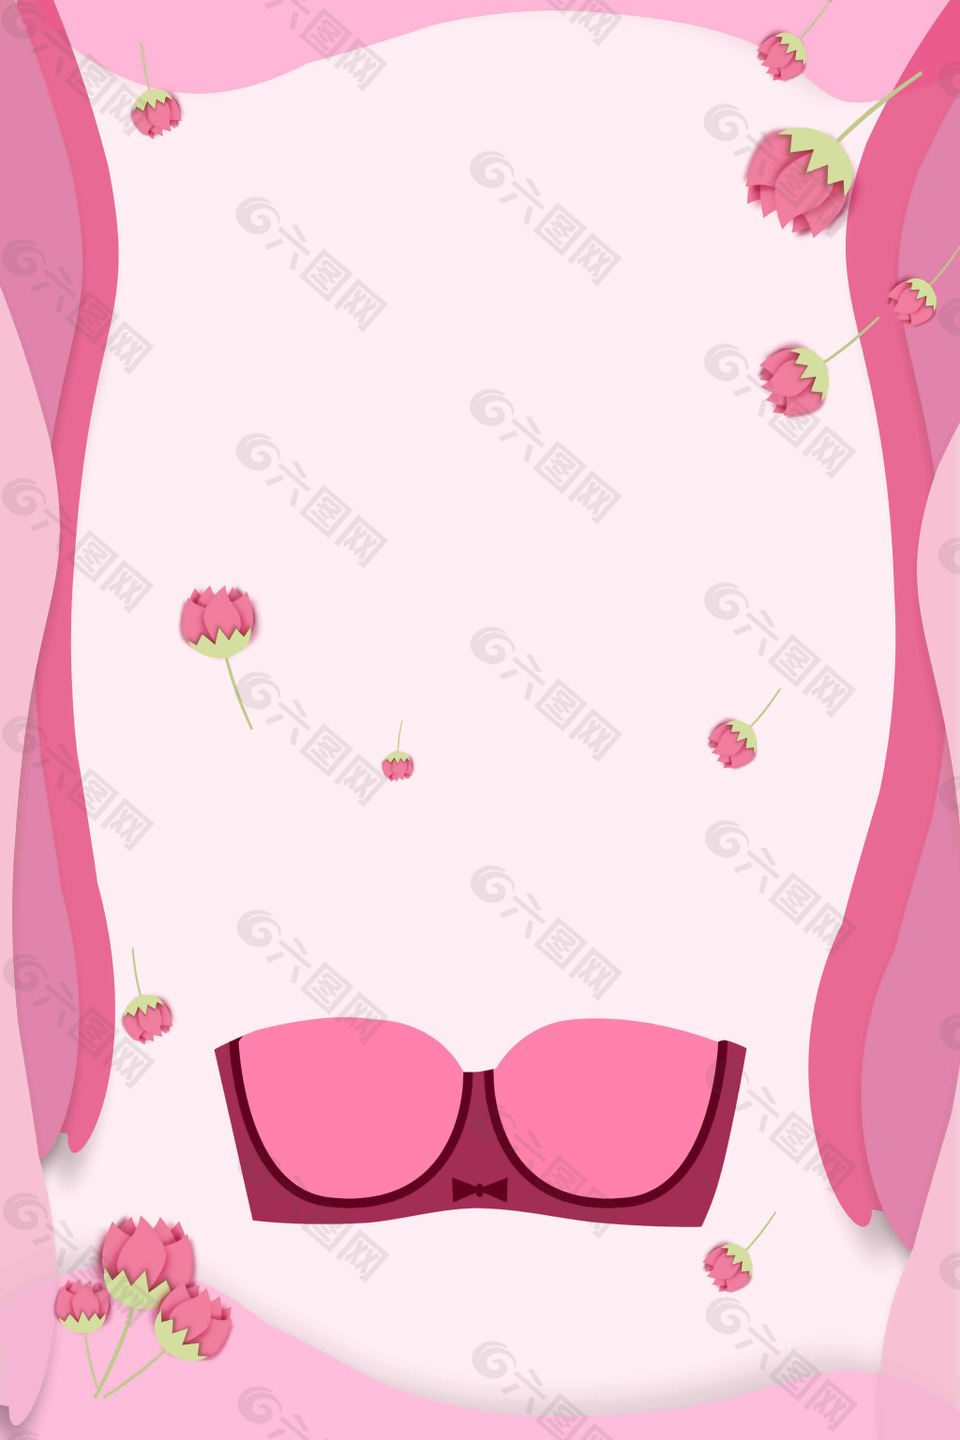 粉色浪漫花朵手绘背景